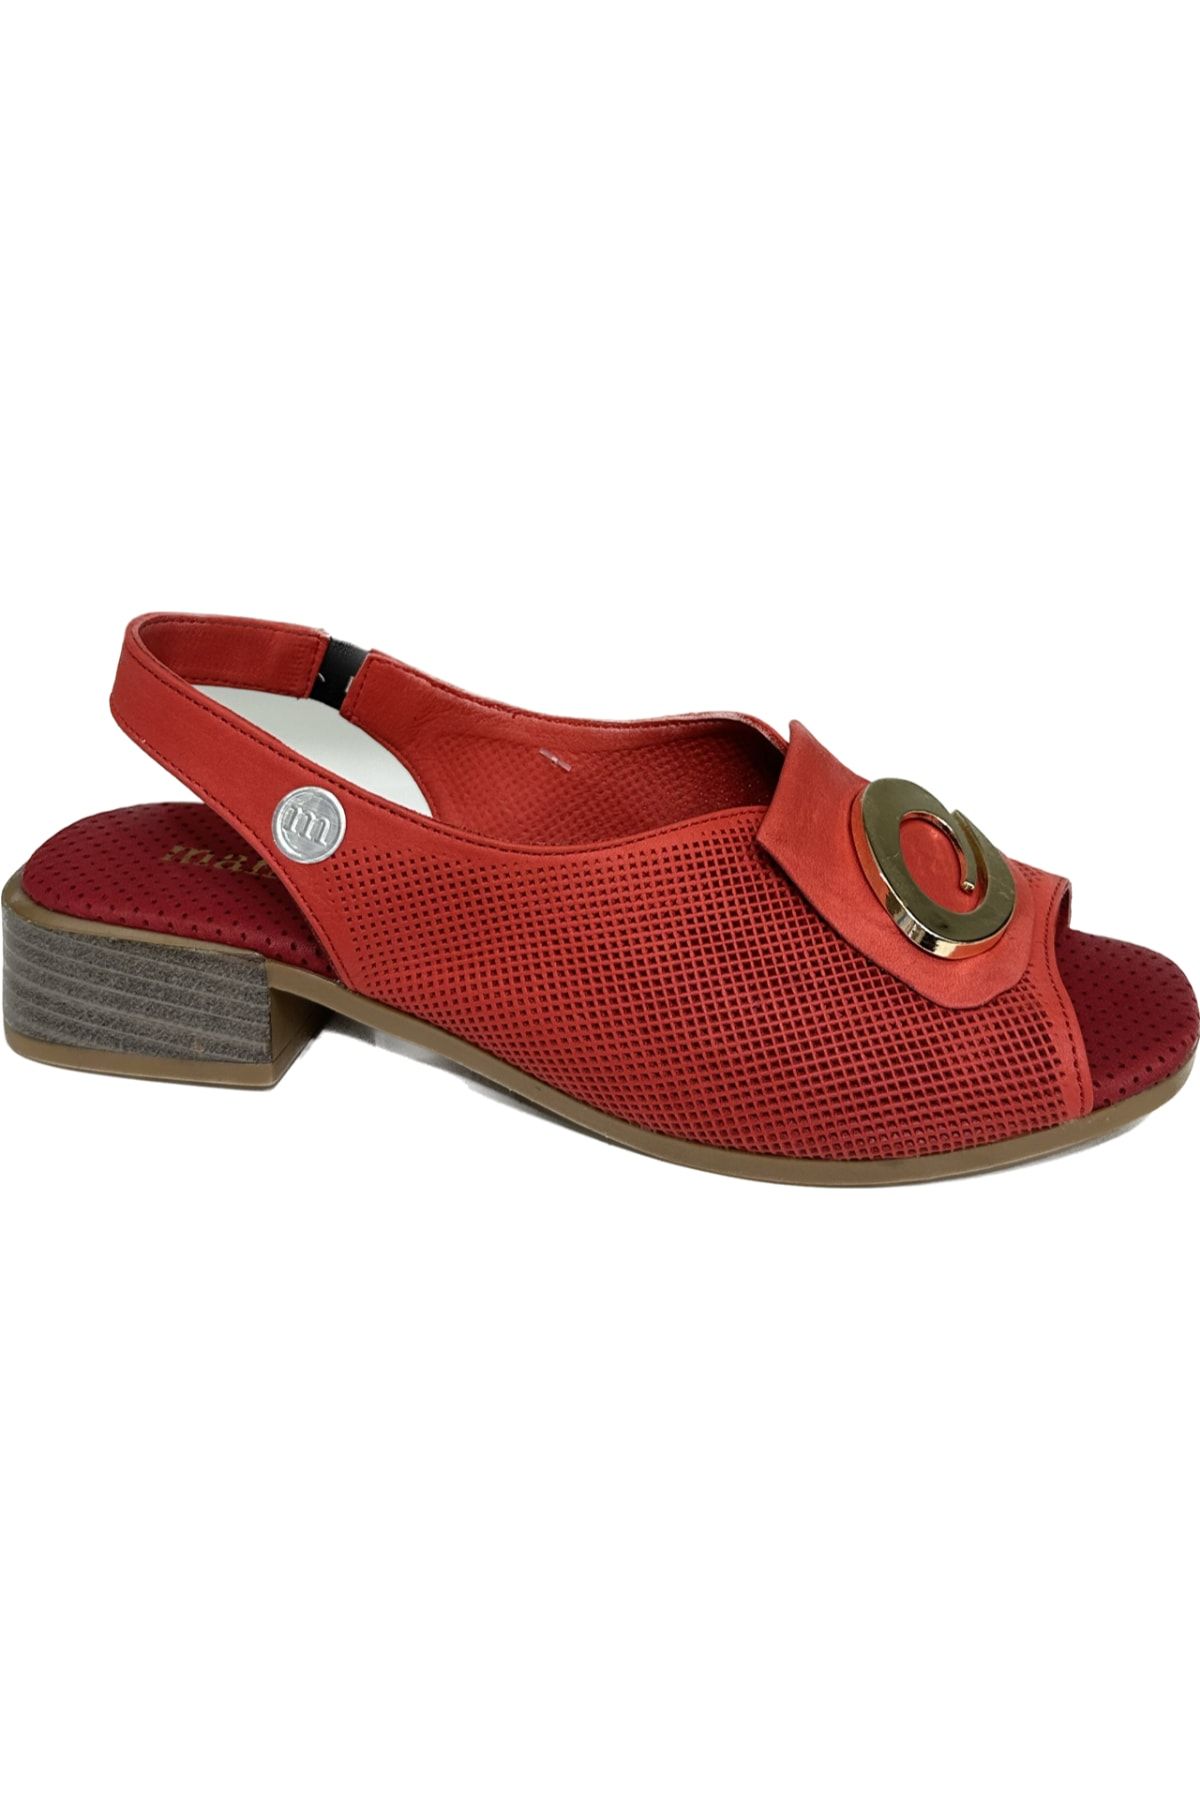 Mammamia Ys1340 Kırmızı Deri Kadın Sandalet